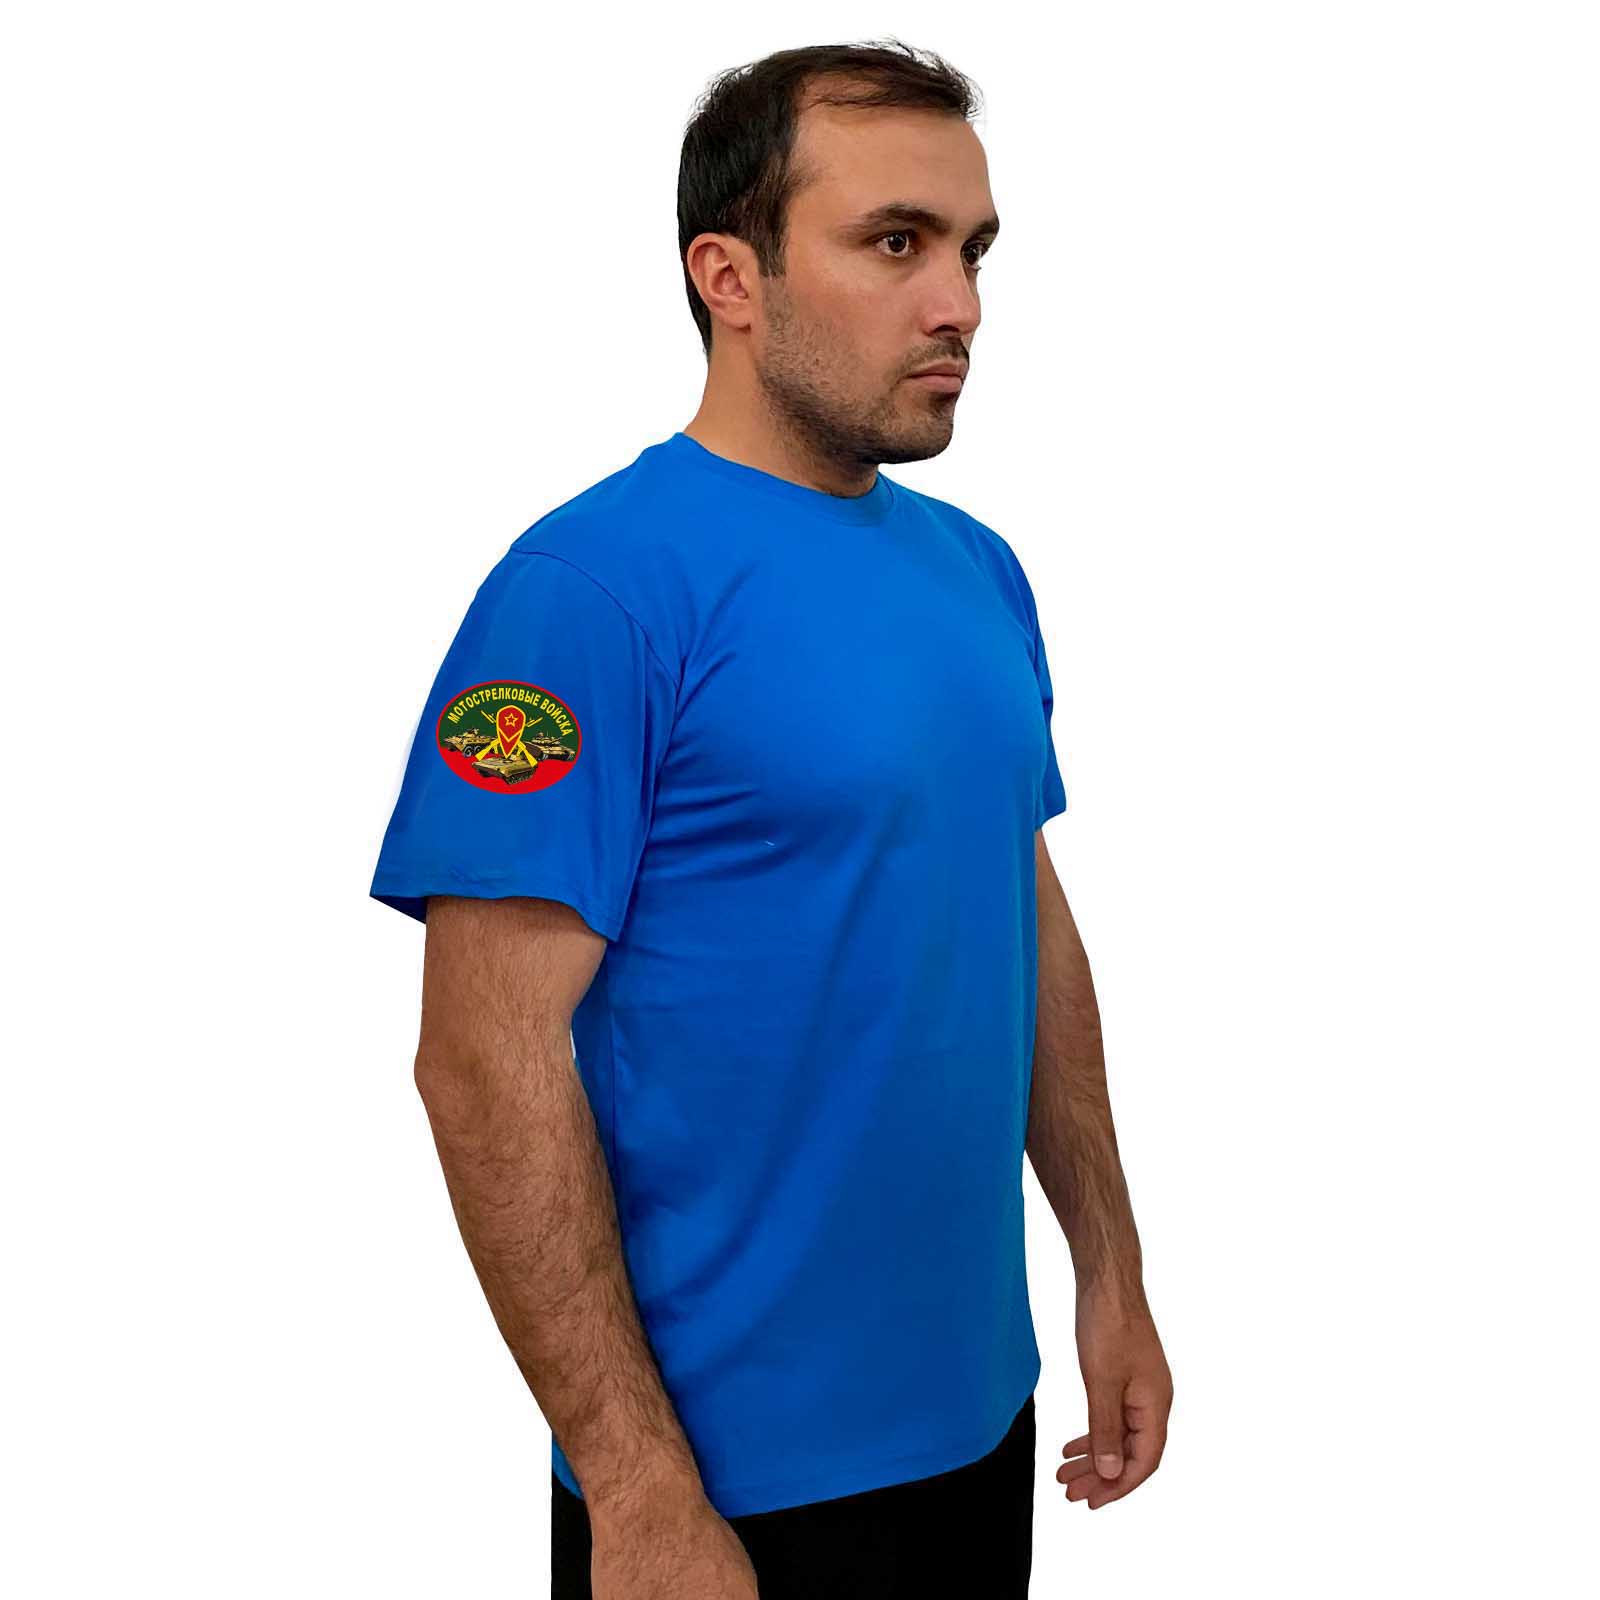 Купить васильковую мужскую футболку с термотрансфером Мотострелковые Войска выгодно